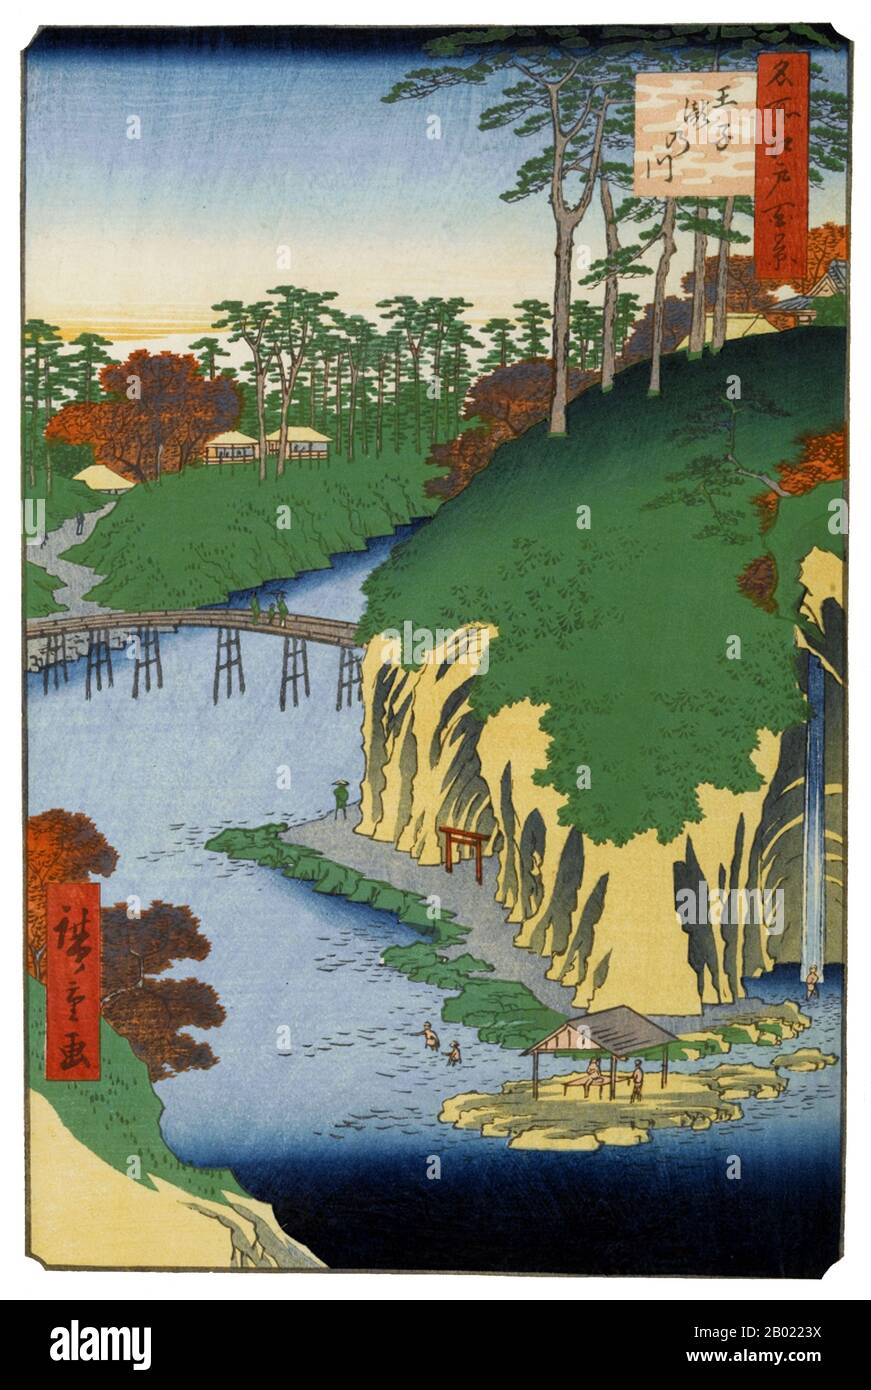 Die hundert Berühmten Ansichten von Hiroshige von Edo (名所江戸百景), die sich eigentlich aus 118 Szenen aus der Holzschnittlandschaft und dem Genre der Mitte des 19. Jahrhunderts Tokios zusammensetzen, sind eine der größten Errungenschaften der japanischen Kunst. Die Serie umfasst viele der berühmtesten Drucke von Hiroshige. Es stellt eine Feier des Stils und der Welt der schönsten kulturellen Blüte Japans am Ende des Tokugawa-Shogunats dar. Die Menschen in Edo markierten die Herbstsaison (秋の部) mit Ausflügen zu malerischen Sehenswürdigkeiten und Erntefesten und mit Blick auf das Herbstlaub auf seinem Höhepunkt. Die Drucke mit den Nummern 73 bis 98 deuten auf die Aktivitäten dieser Meere hin Stockfoto